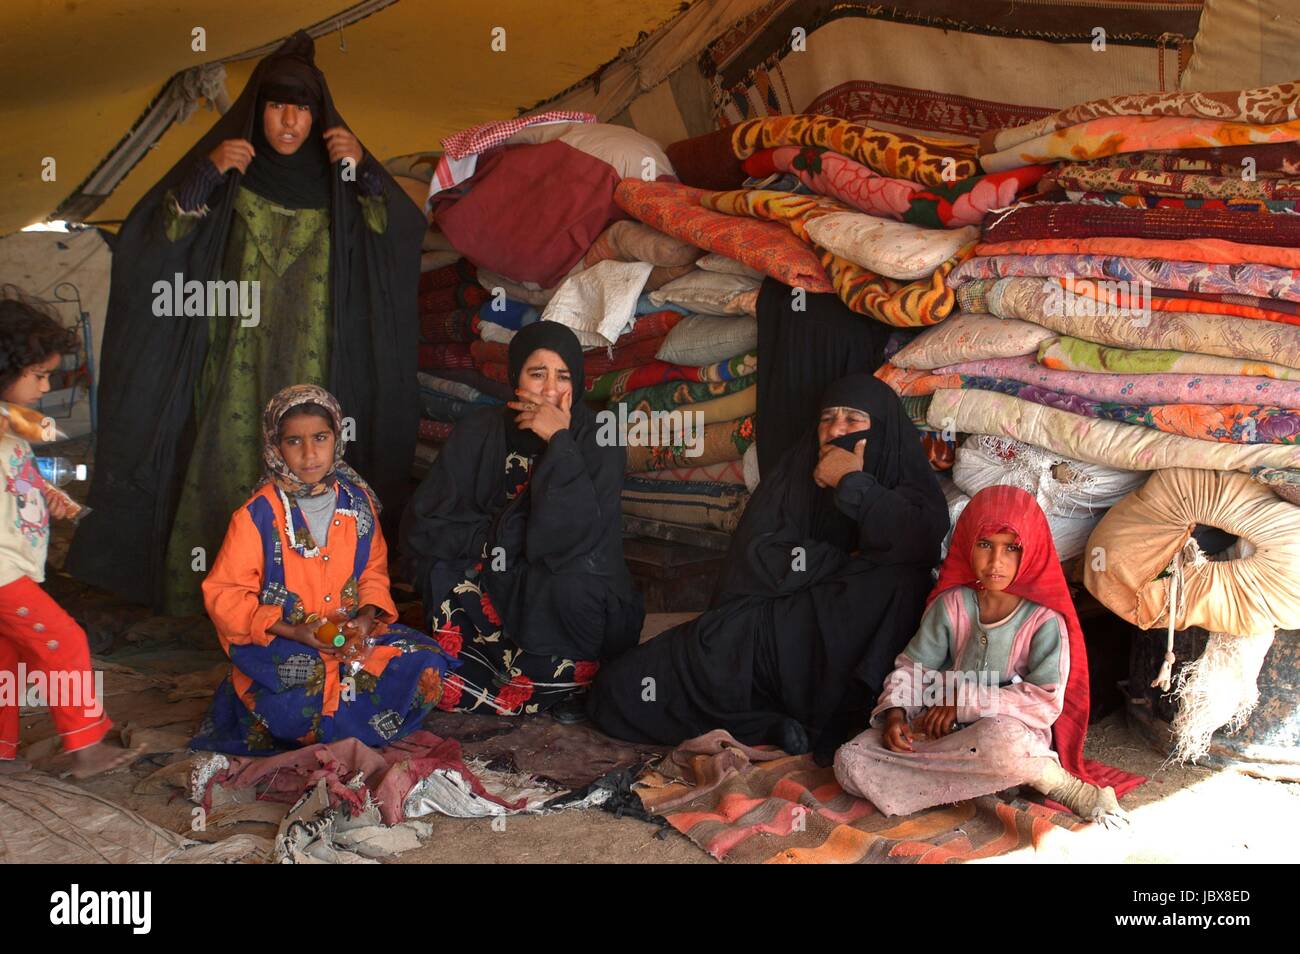 L'Iraq, nomades bédouins campent dans la périphérie de la ville de Nassiriya Banque D'Images